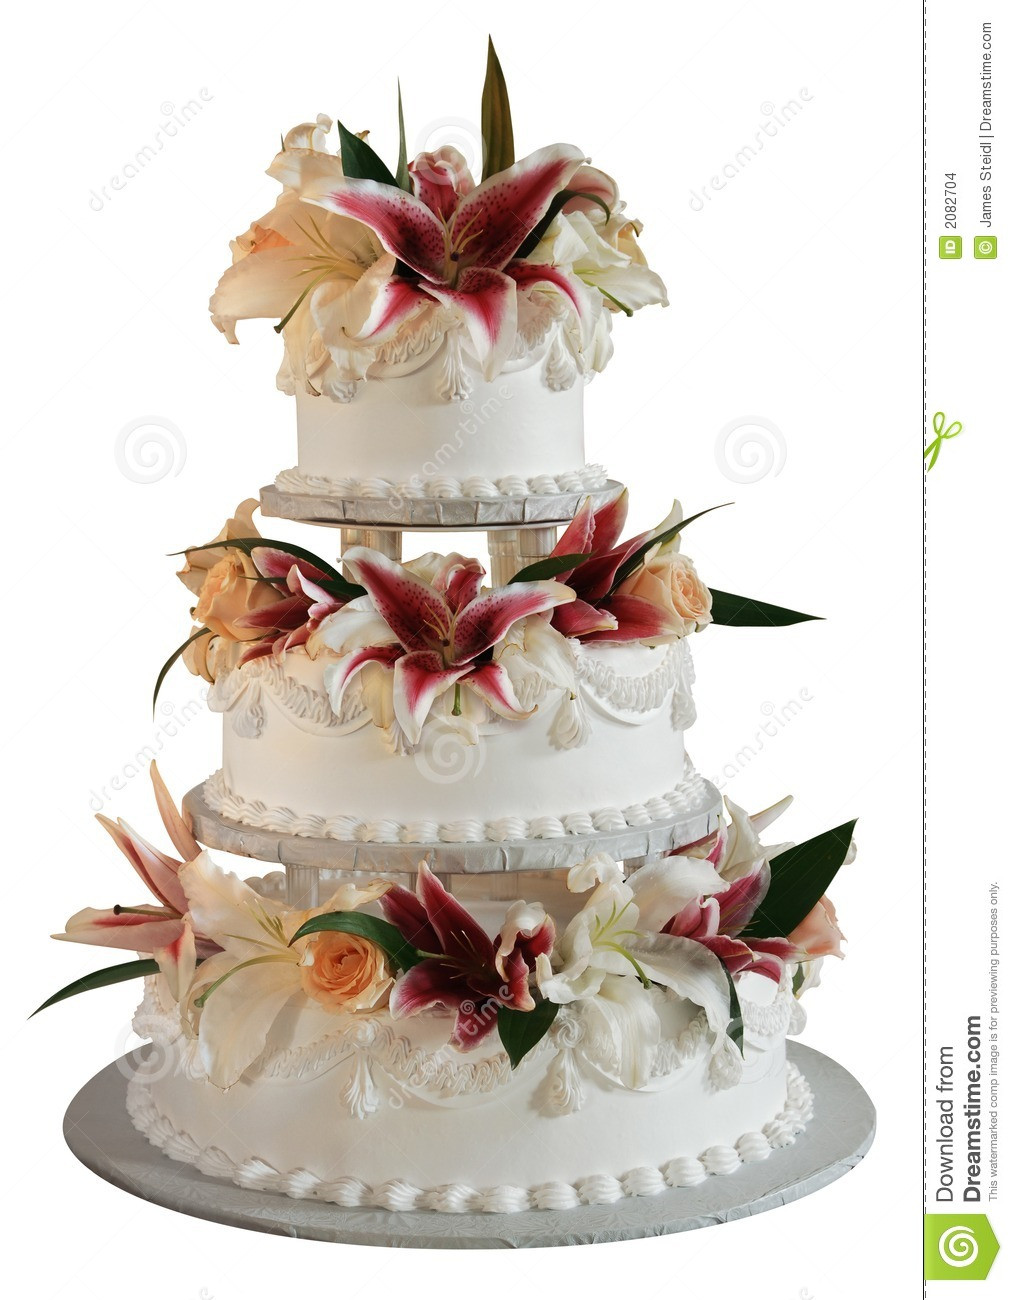 Three Layered Wedding Cakes
 3 layer wedding cake stock photo Image of roses bride